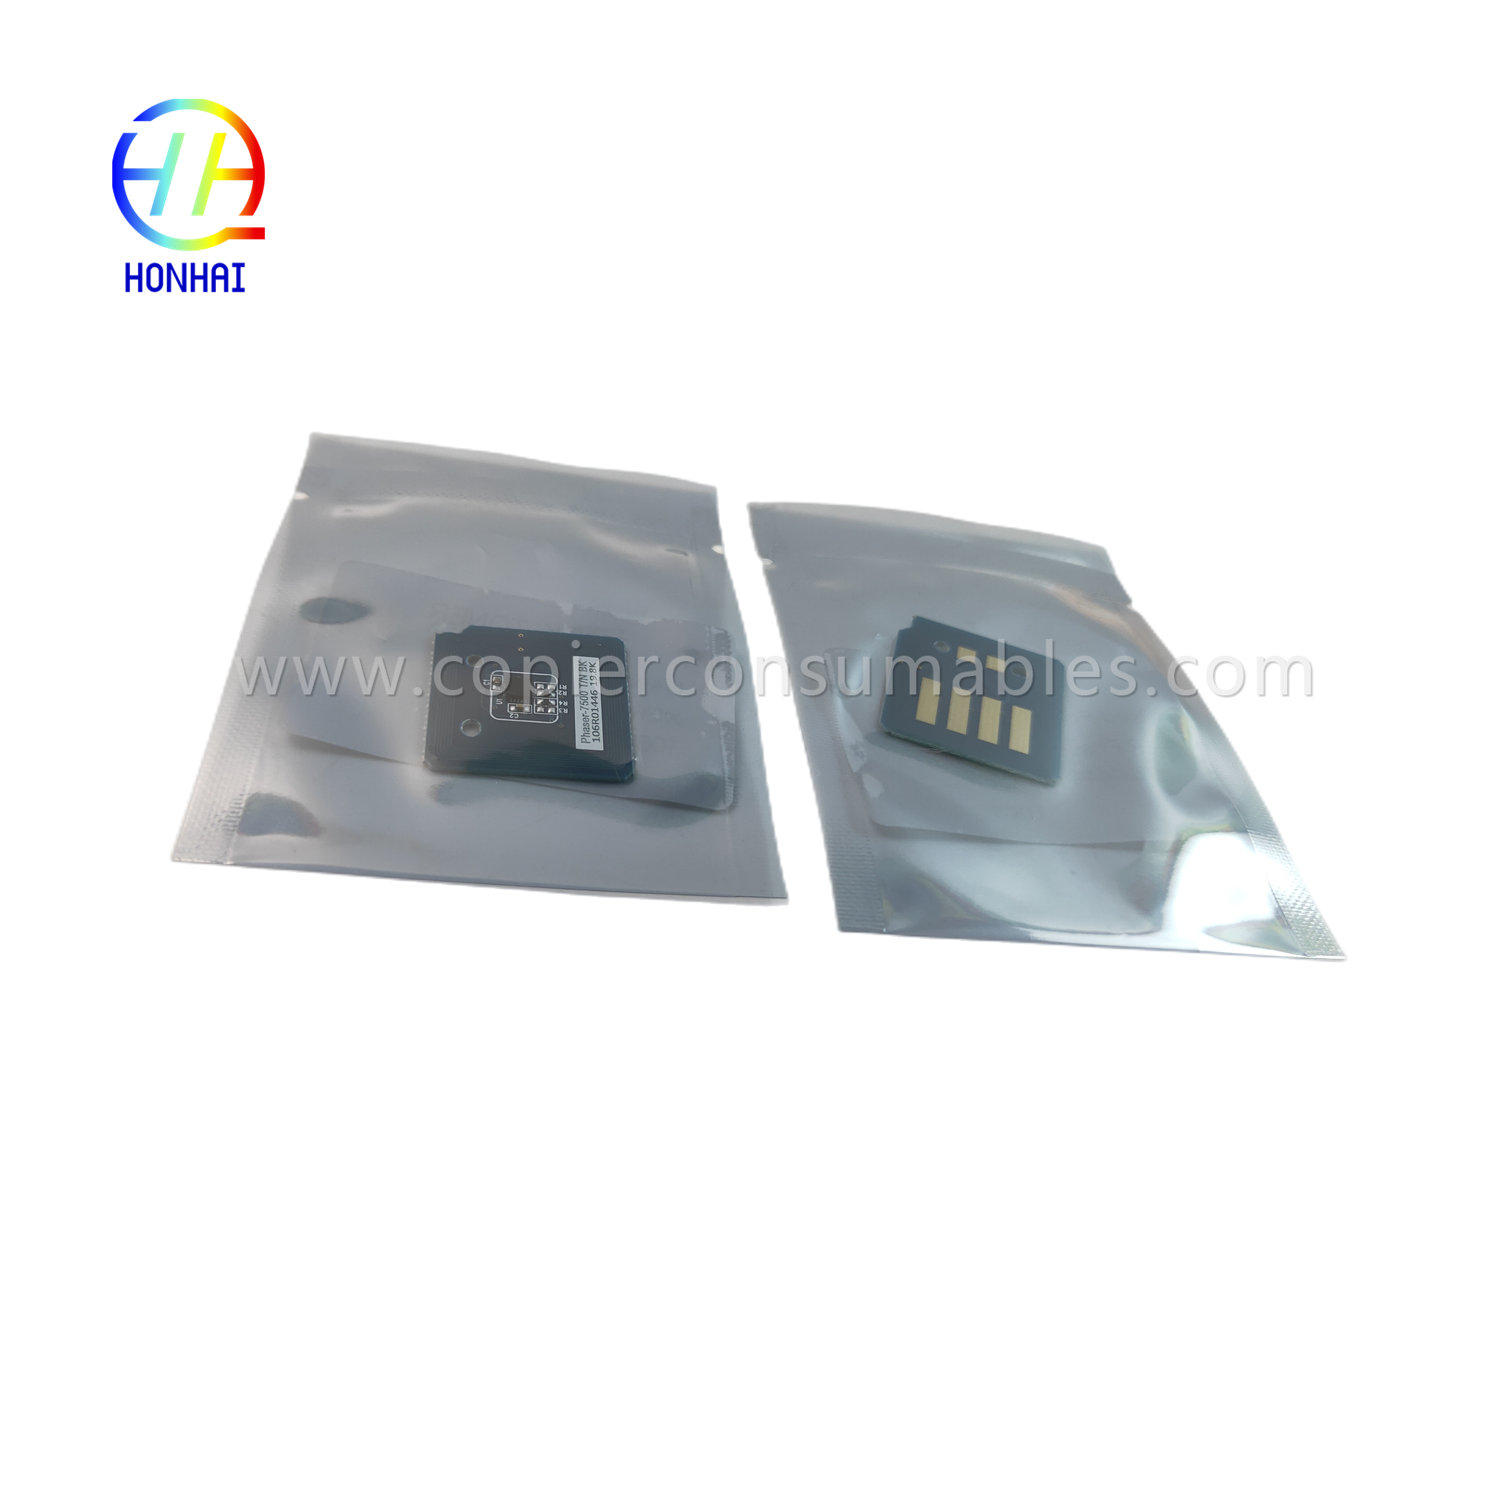 https://c585.goodao.net/toner-cartridge-chip-voor-xerox-7500-7500n-7500dn-7500dt-106r01444-106r01446-toner-chip-product/